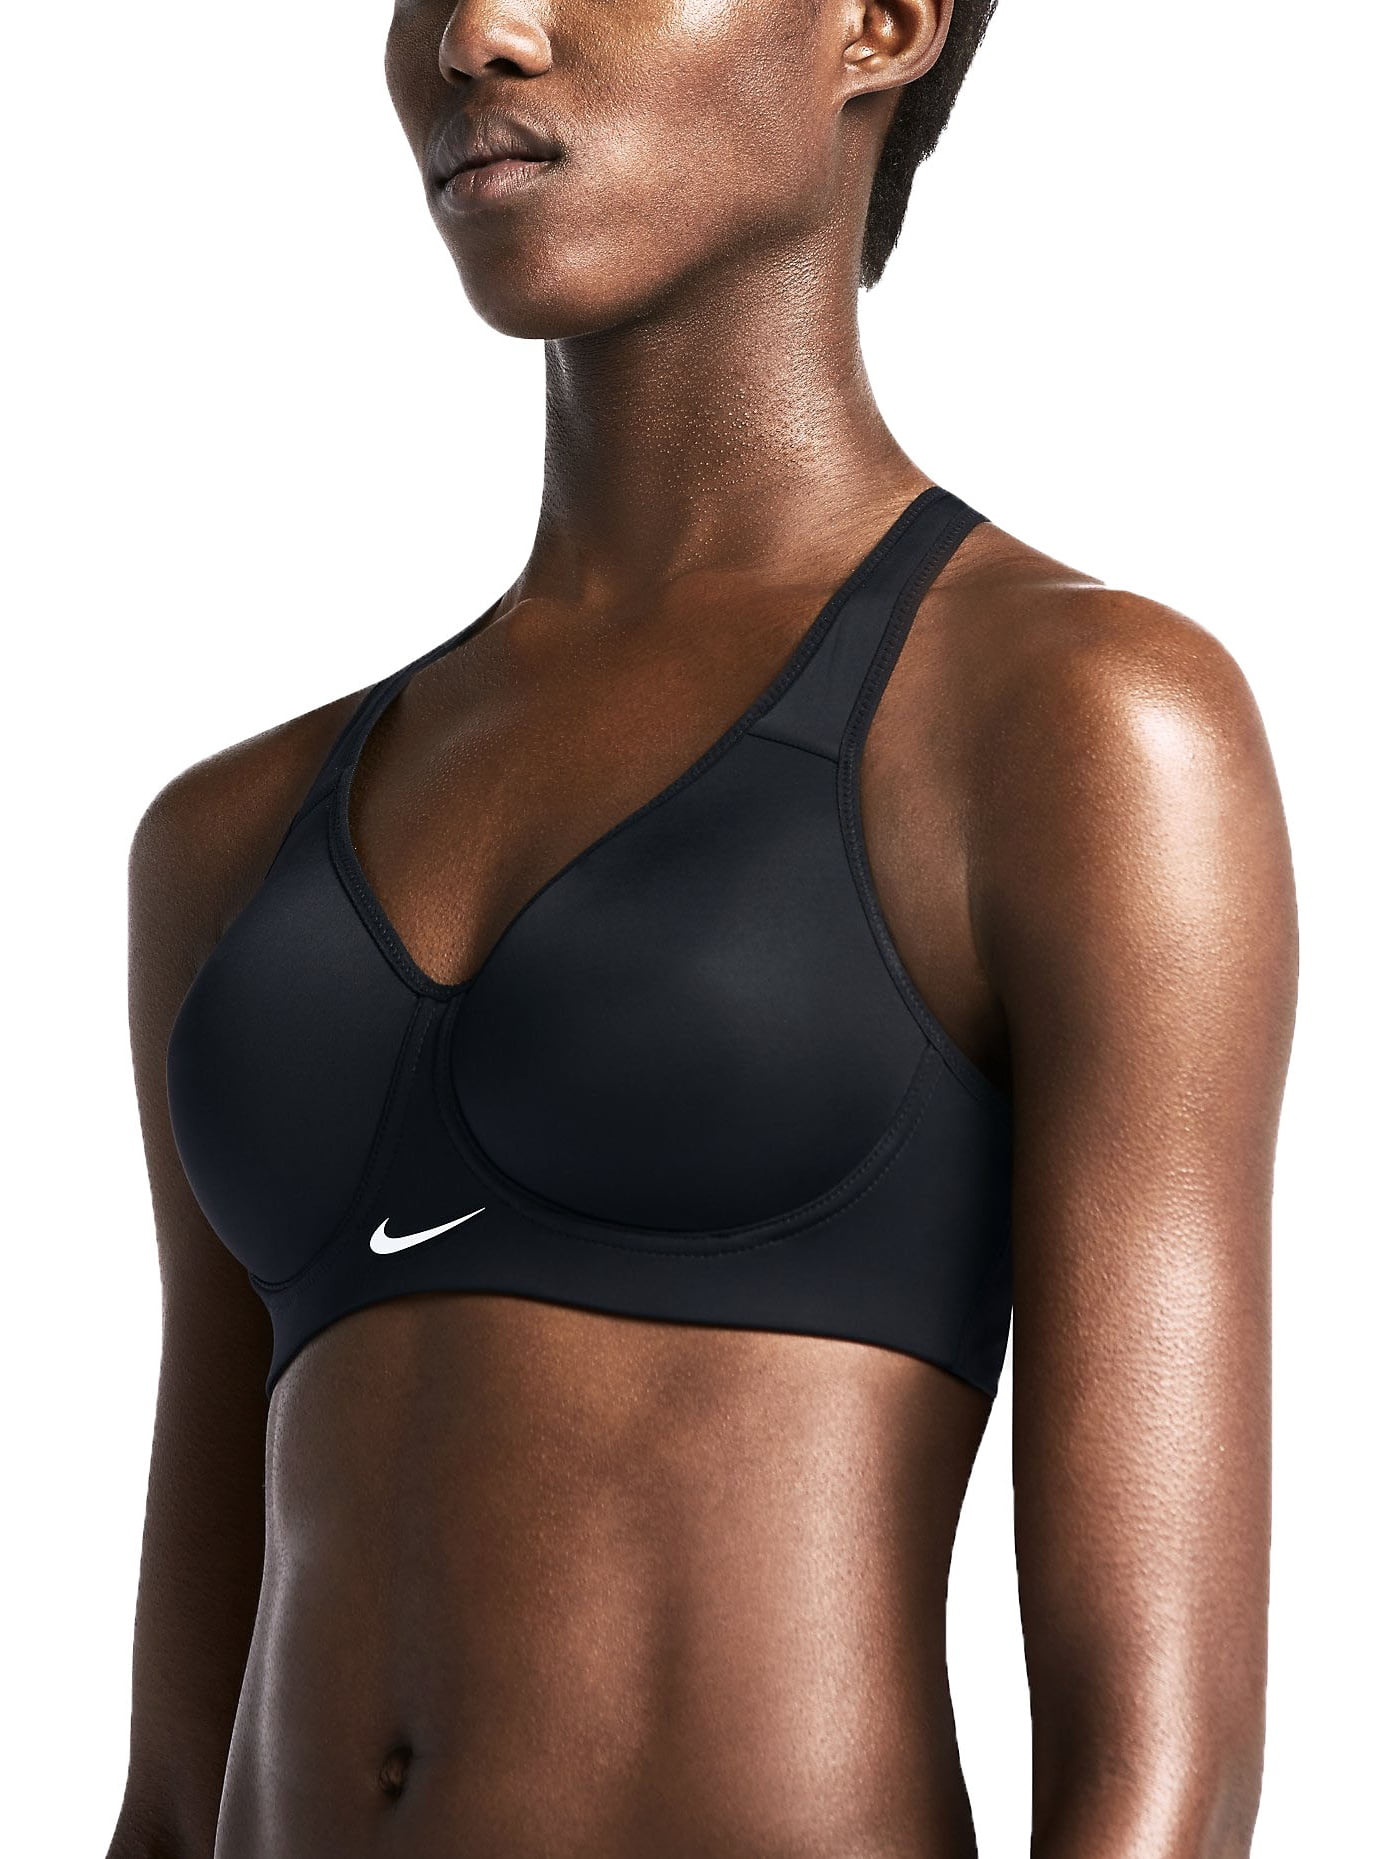 Nike Women's Dri-Fit Rival Sports Bra Walmart.com